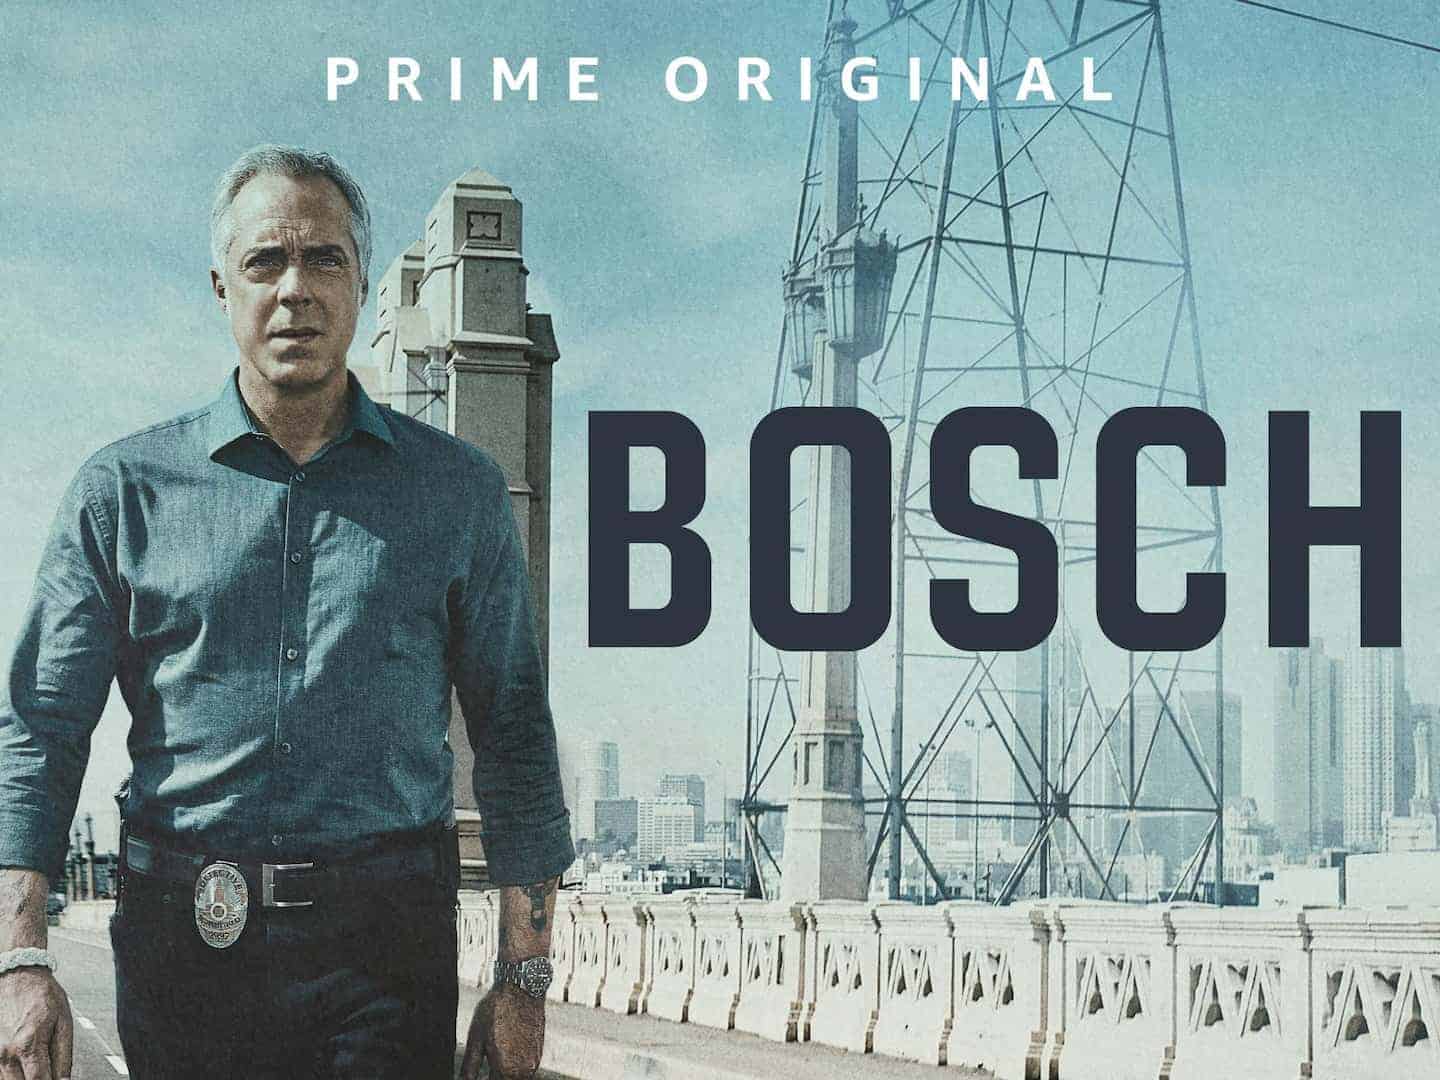 Bosch Season 8 Release Date